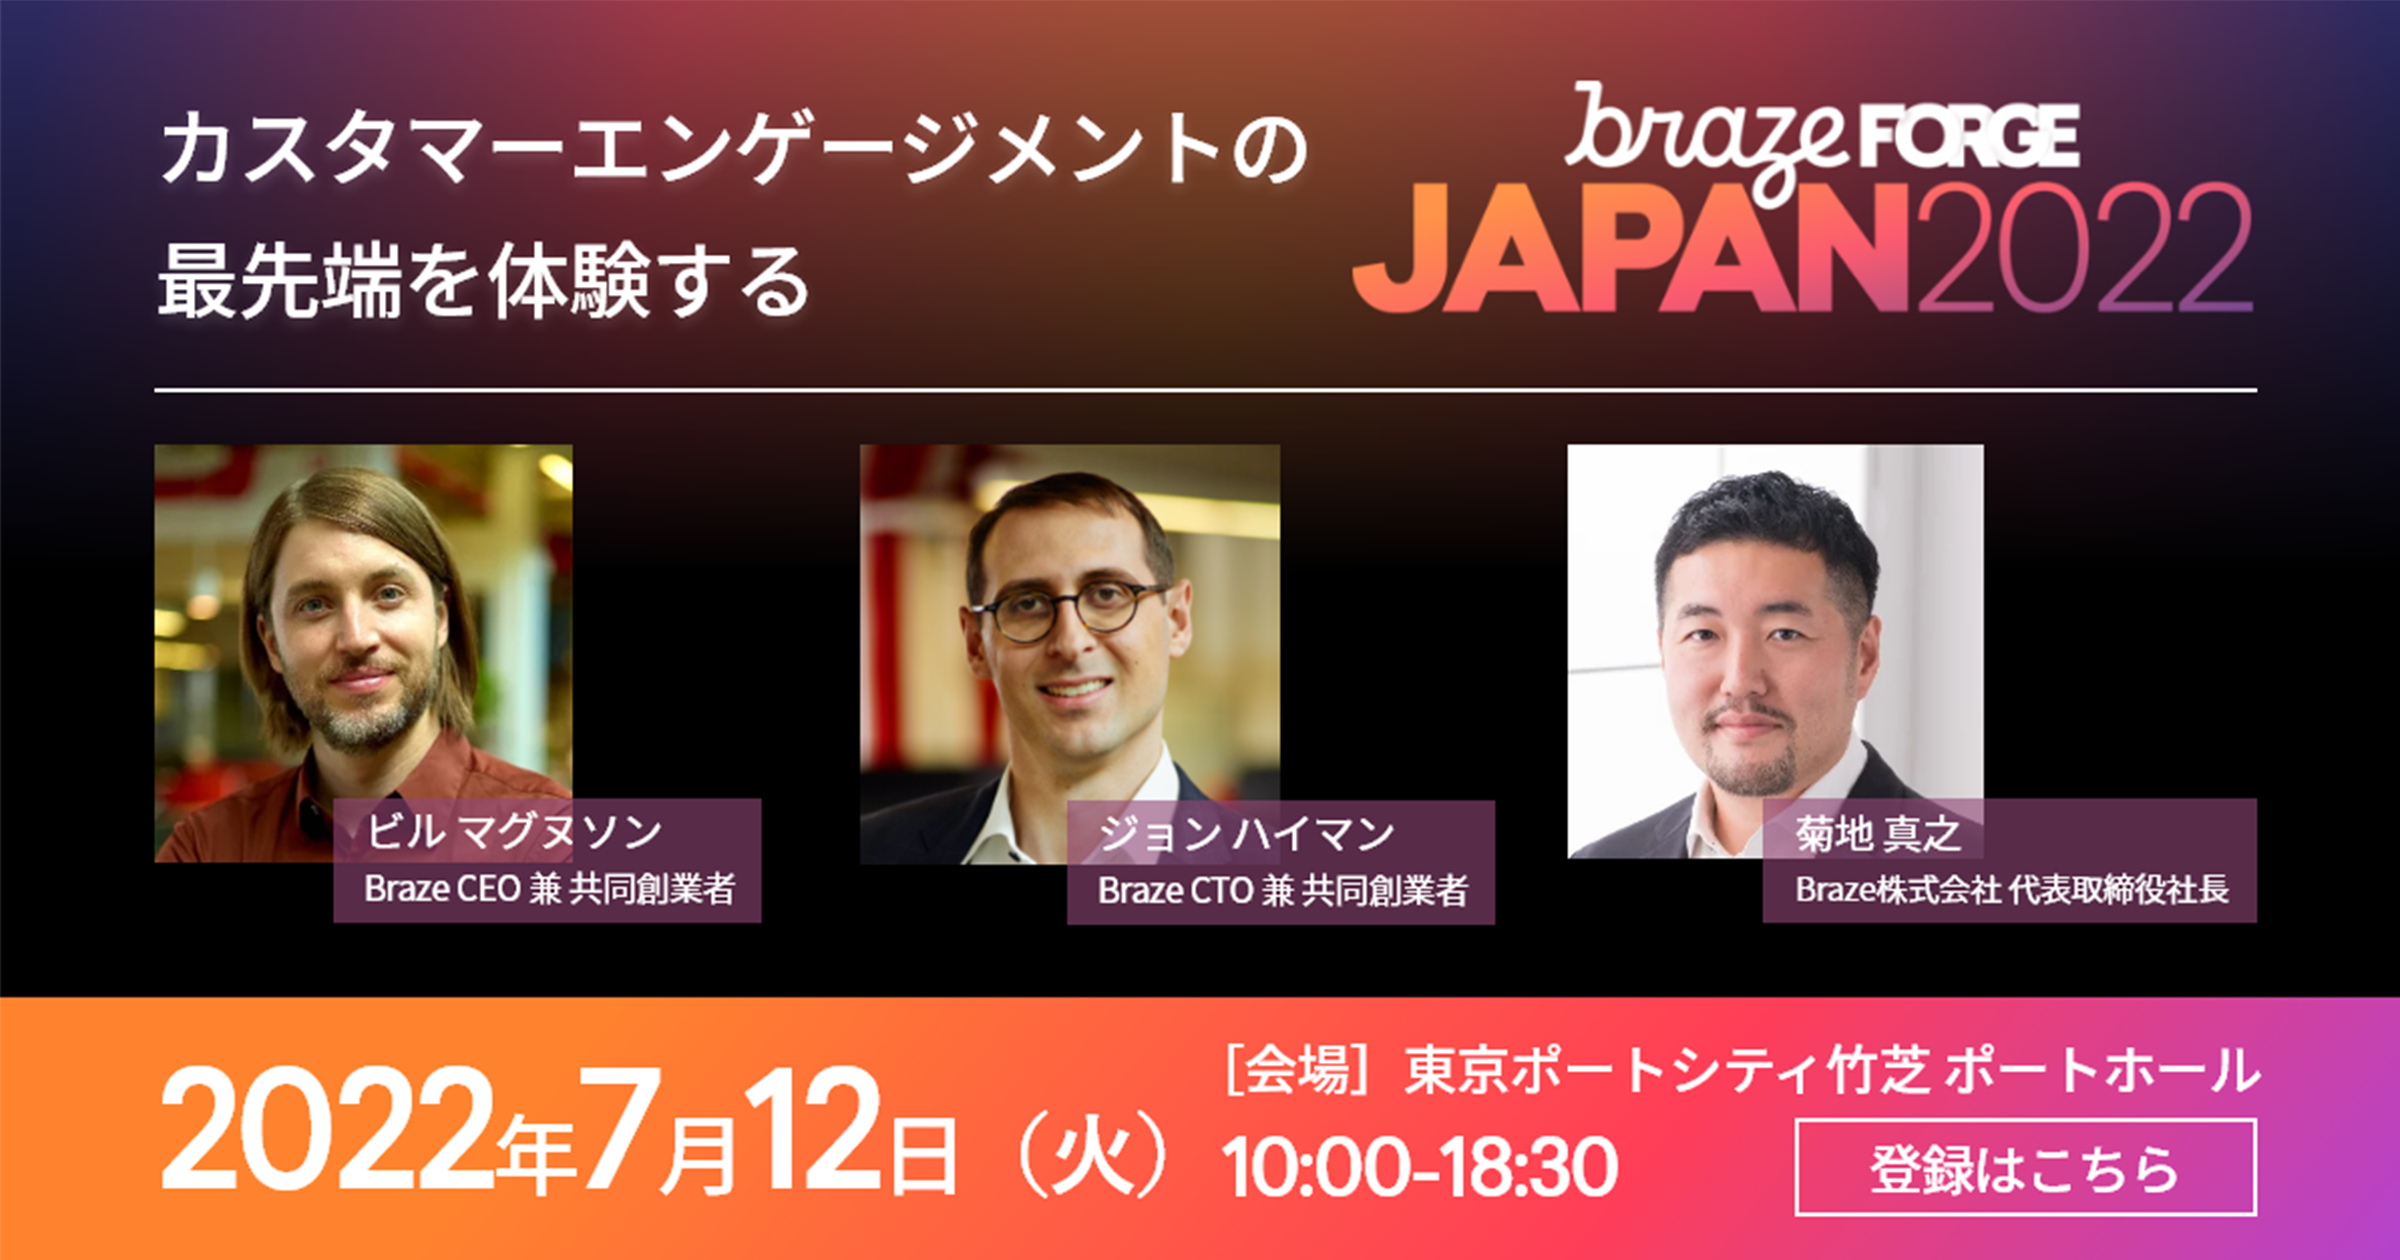 FORGE Japan 2022｜Braze、カスタマーエンゲージメントの最先端を体験するイベントを開催